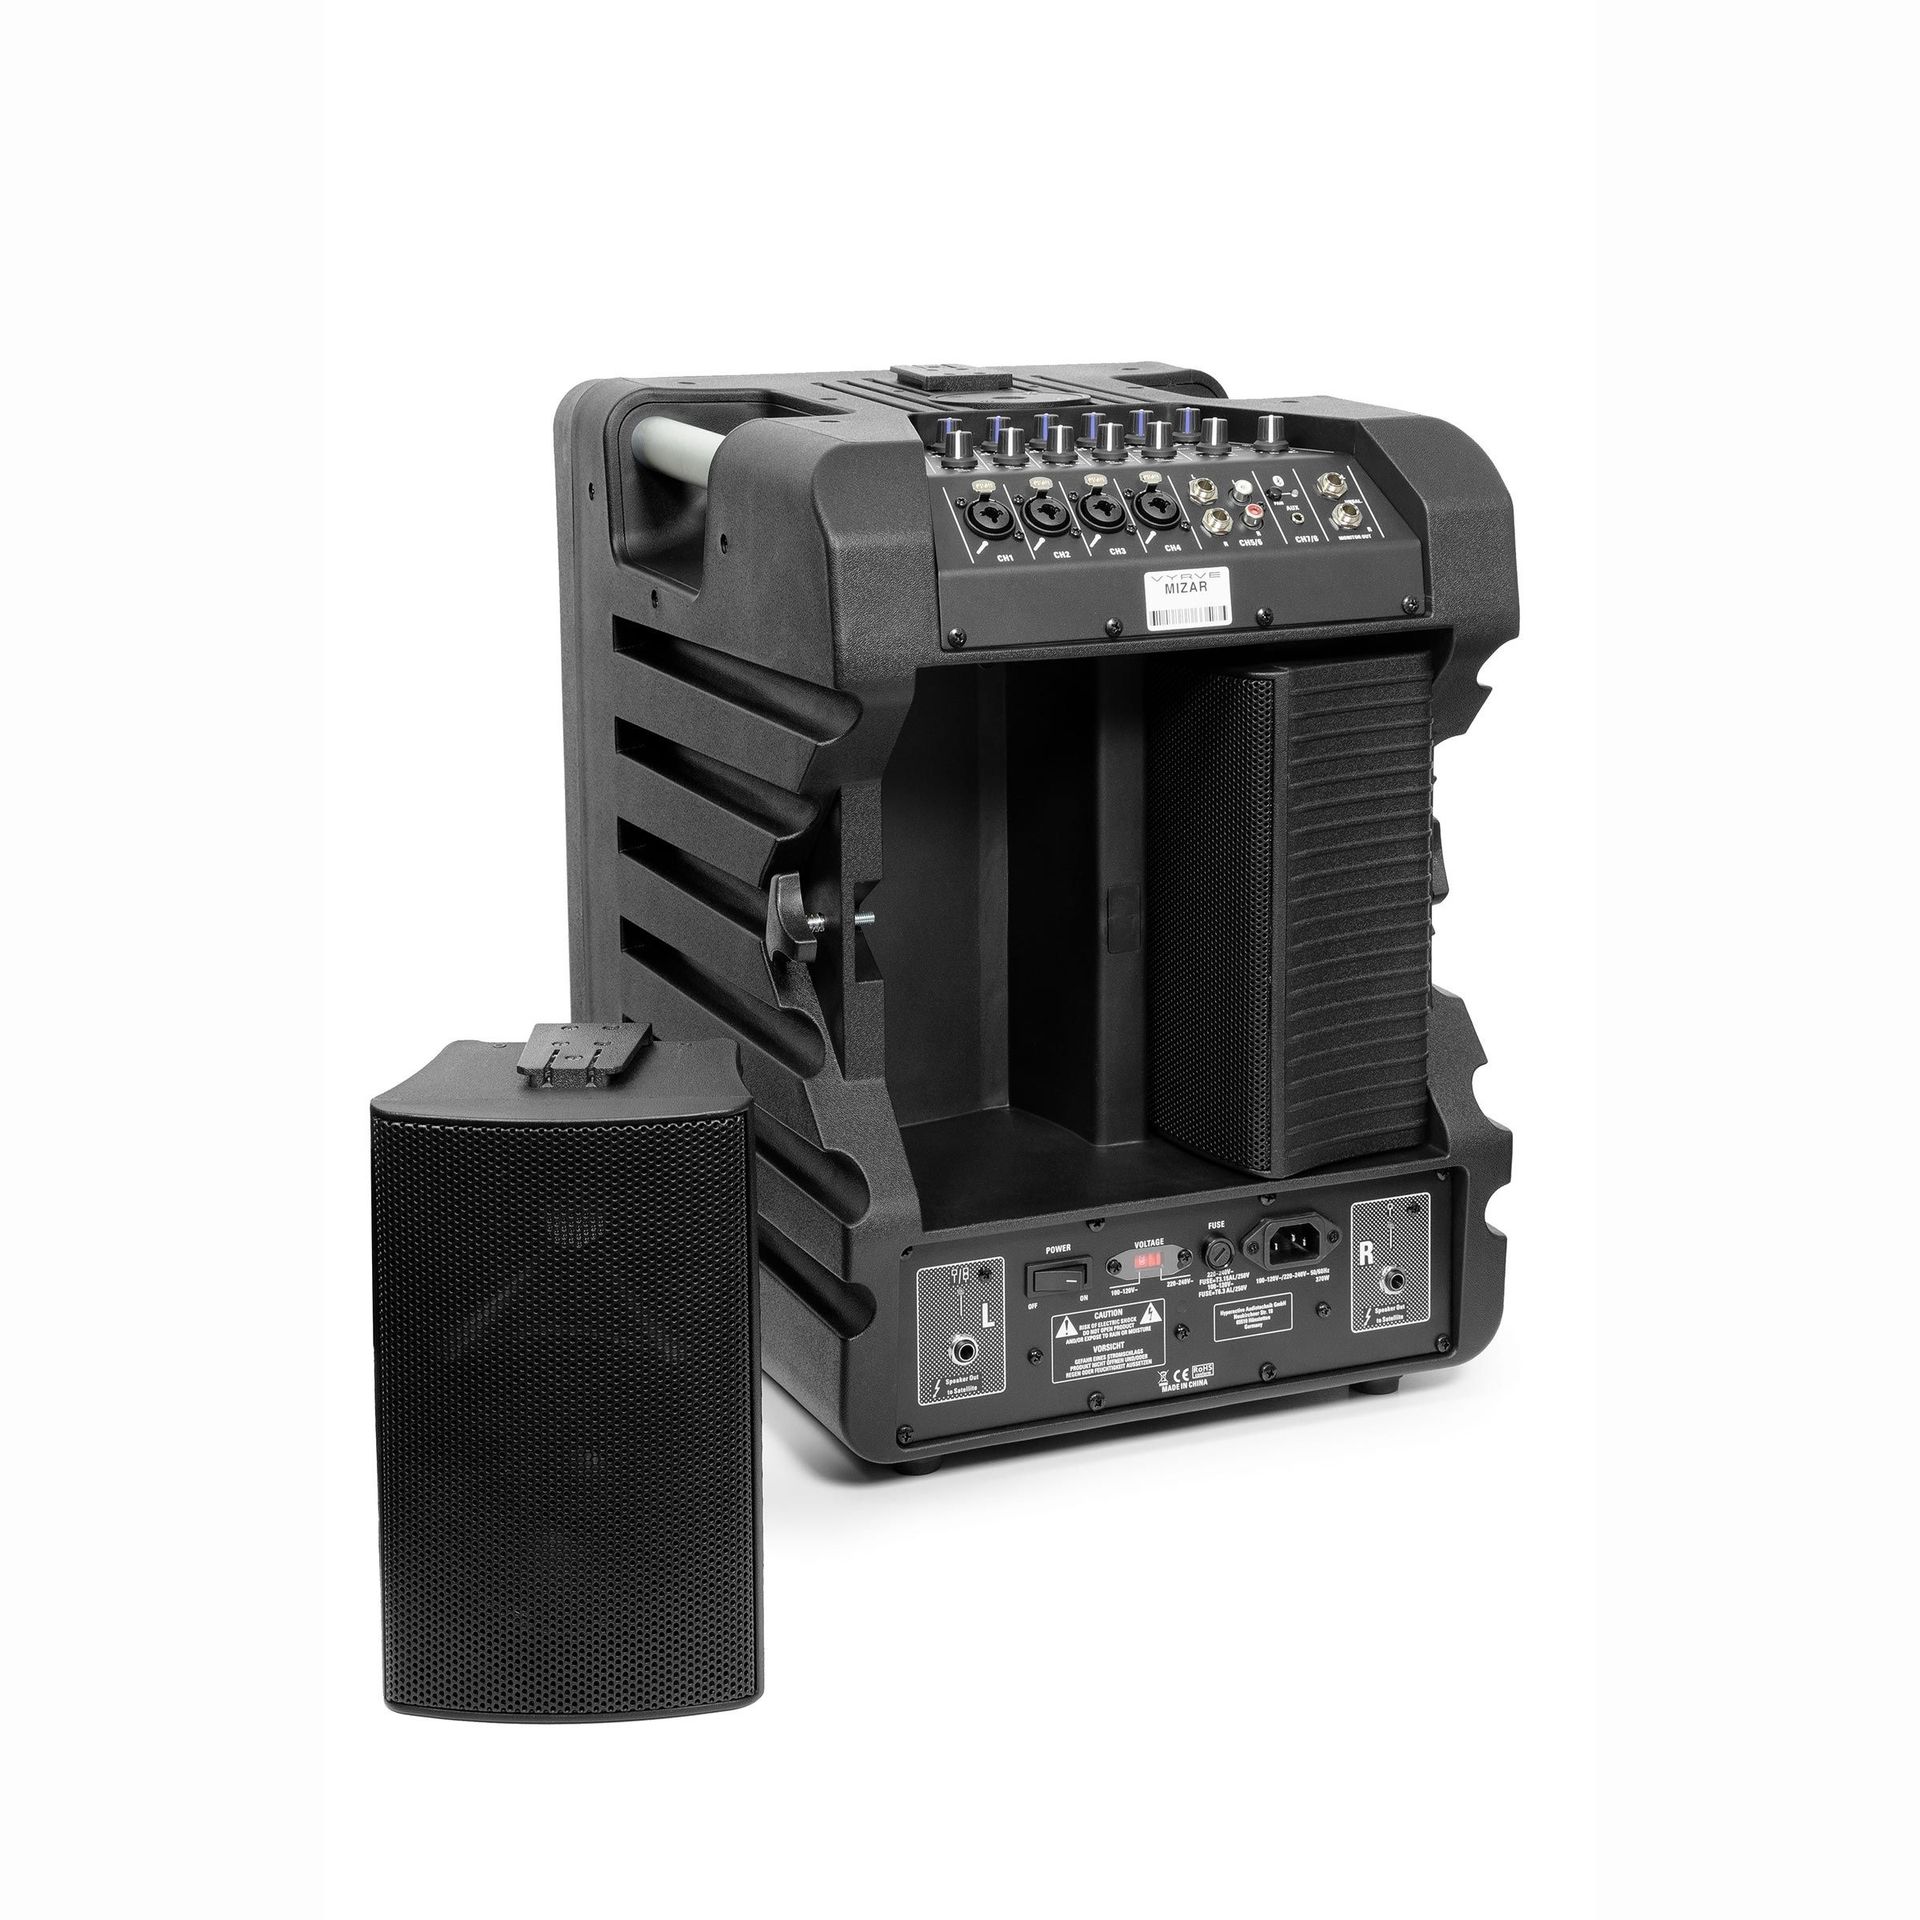 Vyrve Audio Mizar Aktives kompaktes PA-System mit Powermixer, Stative, Kabel